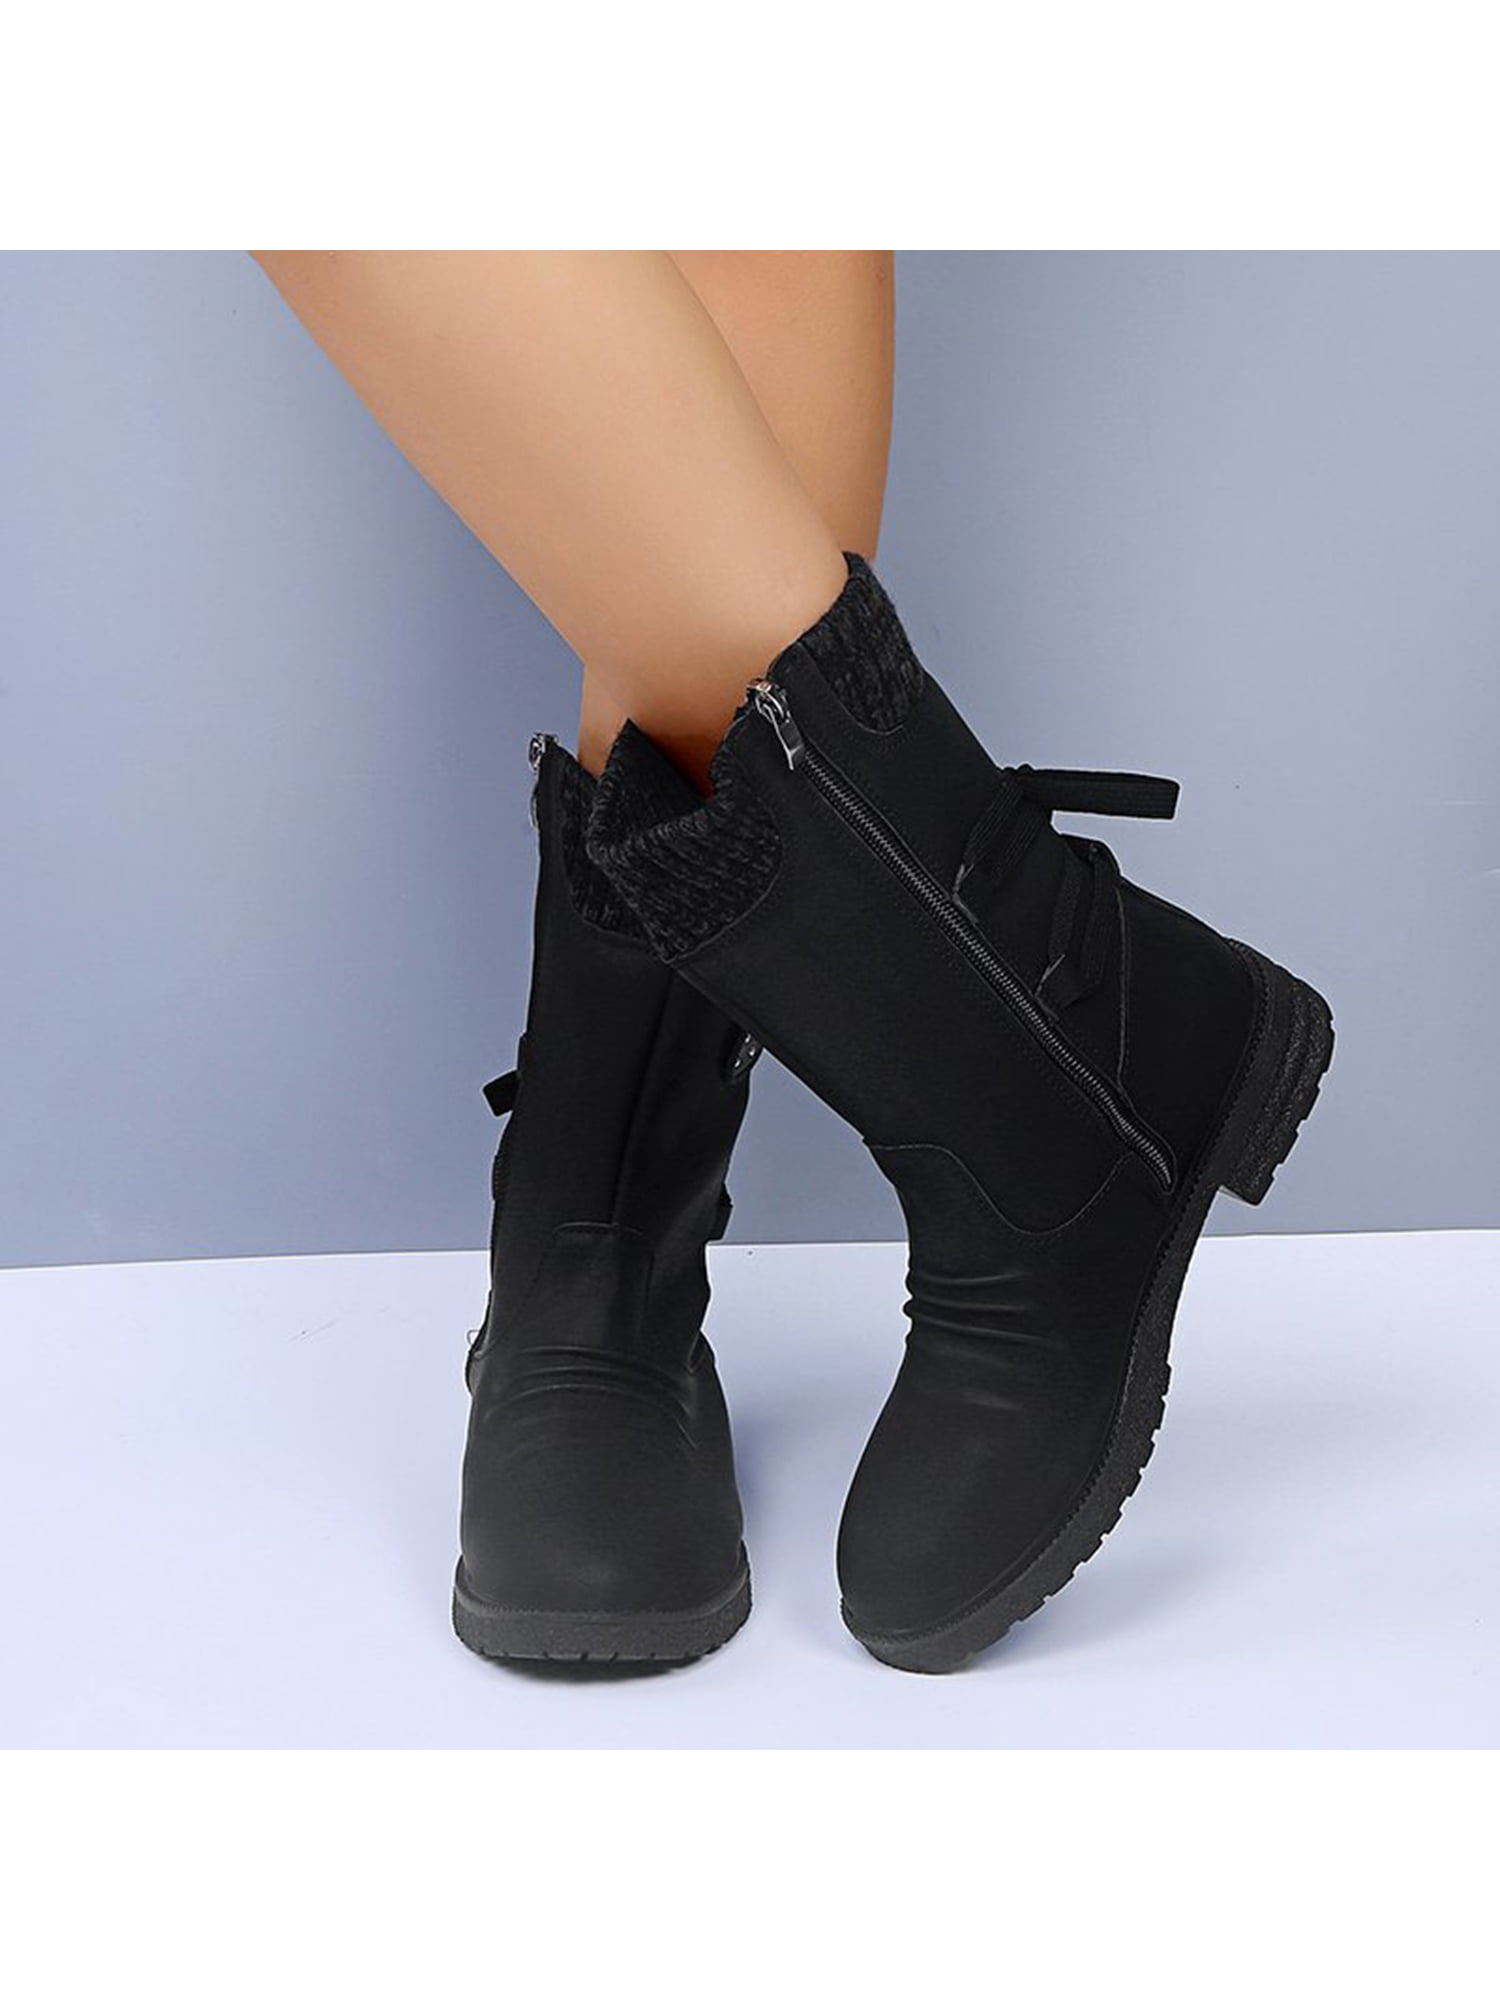 Details about   British Women Ankle Boots High Heel Platform Lace Up Pumps Shoes 41/42/43 Punk D